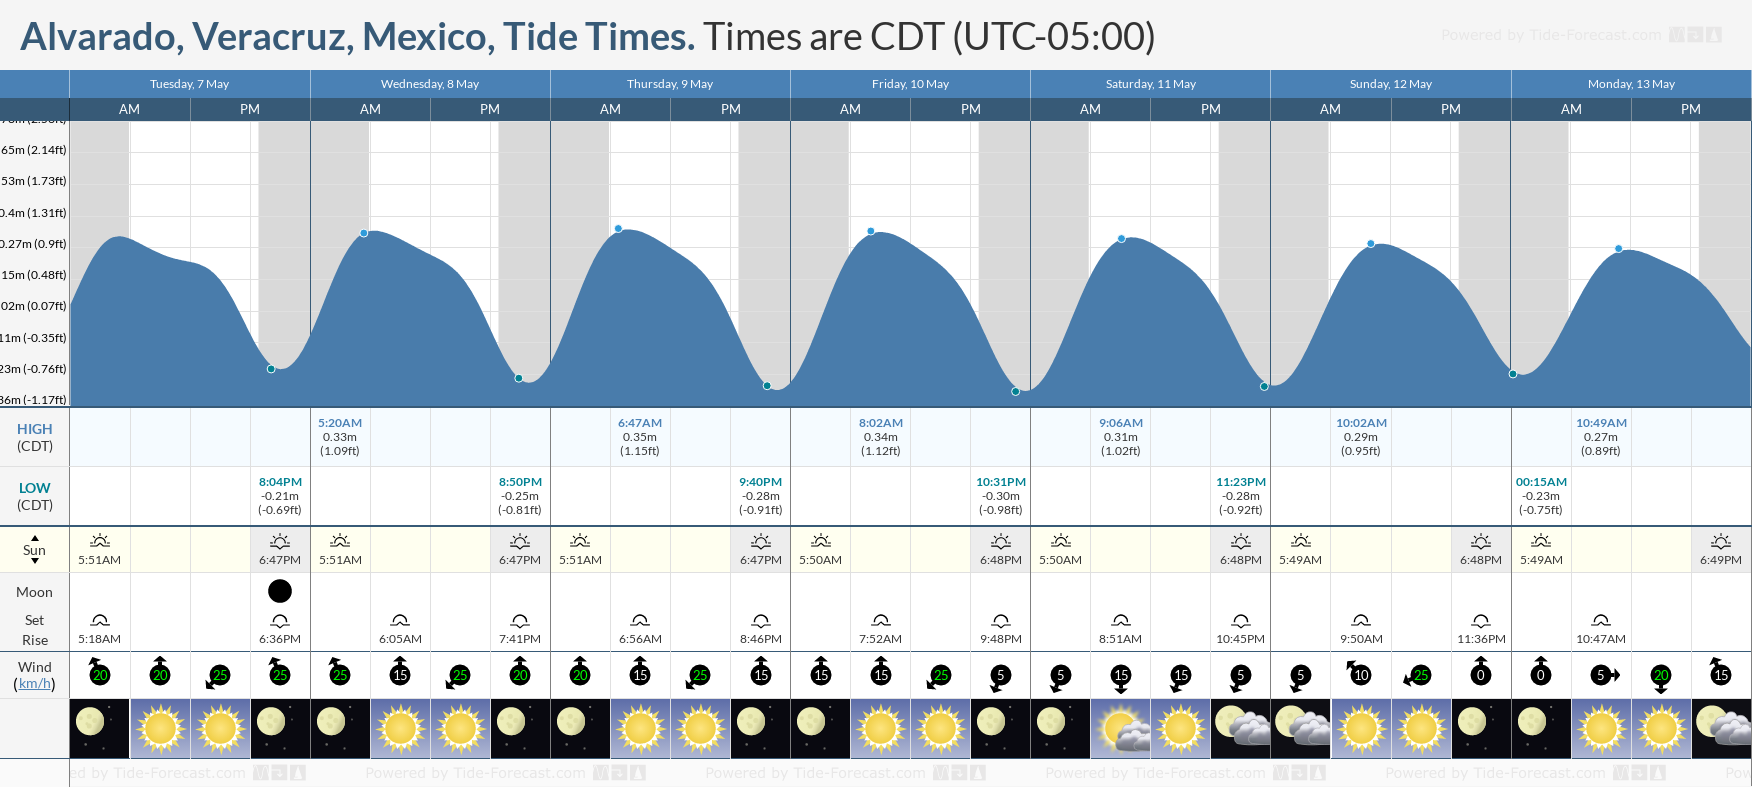 Alvarado, Veracruz, Mexico Tide Chart including high and low tide tide times for the next 7 days